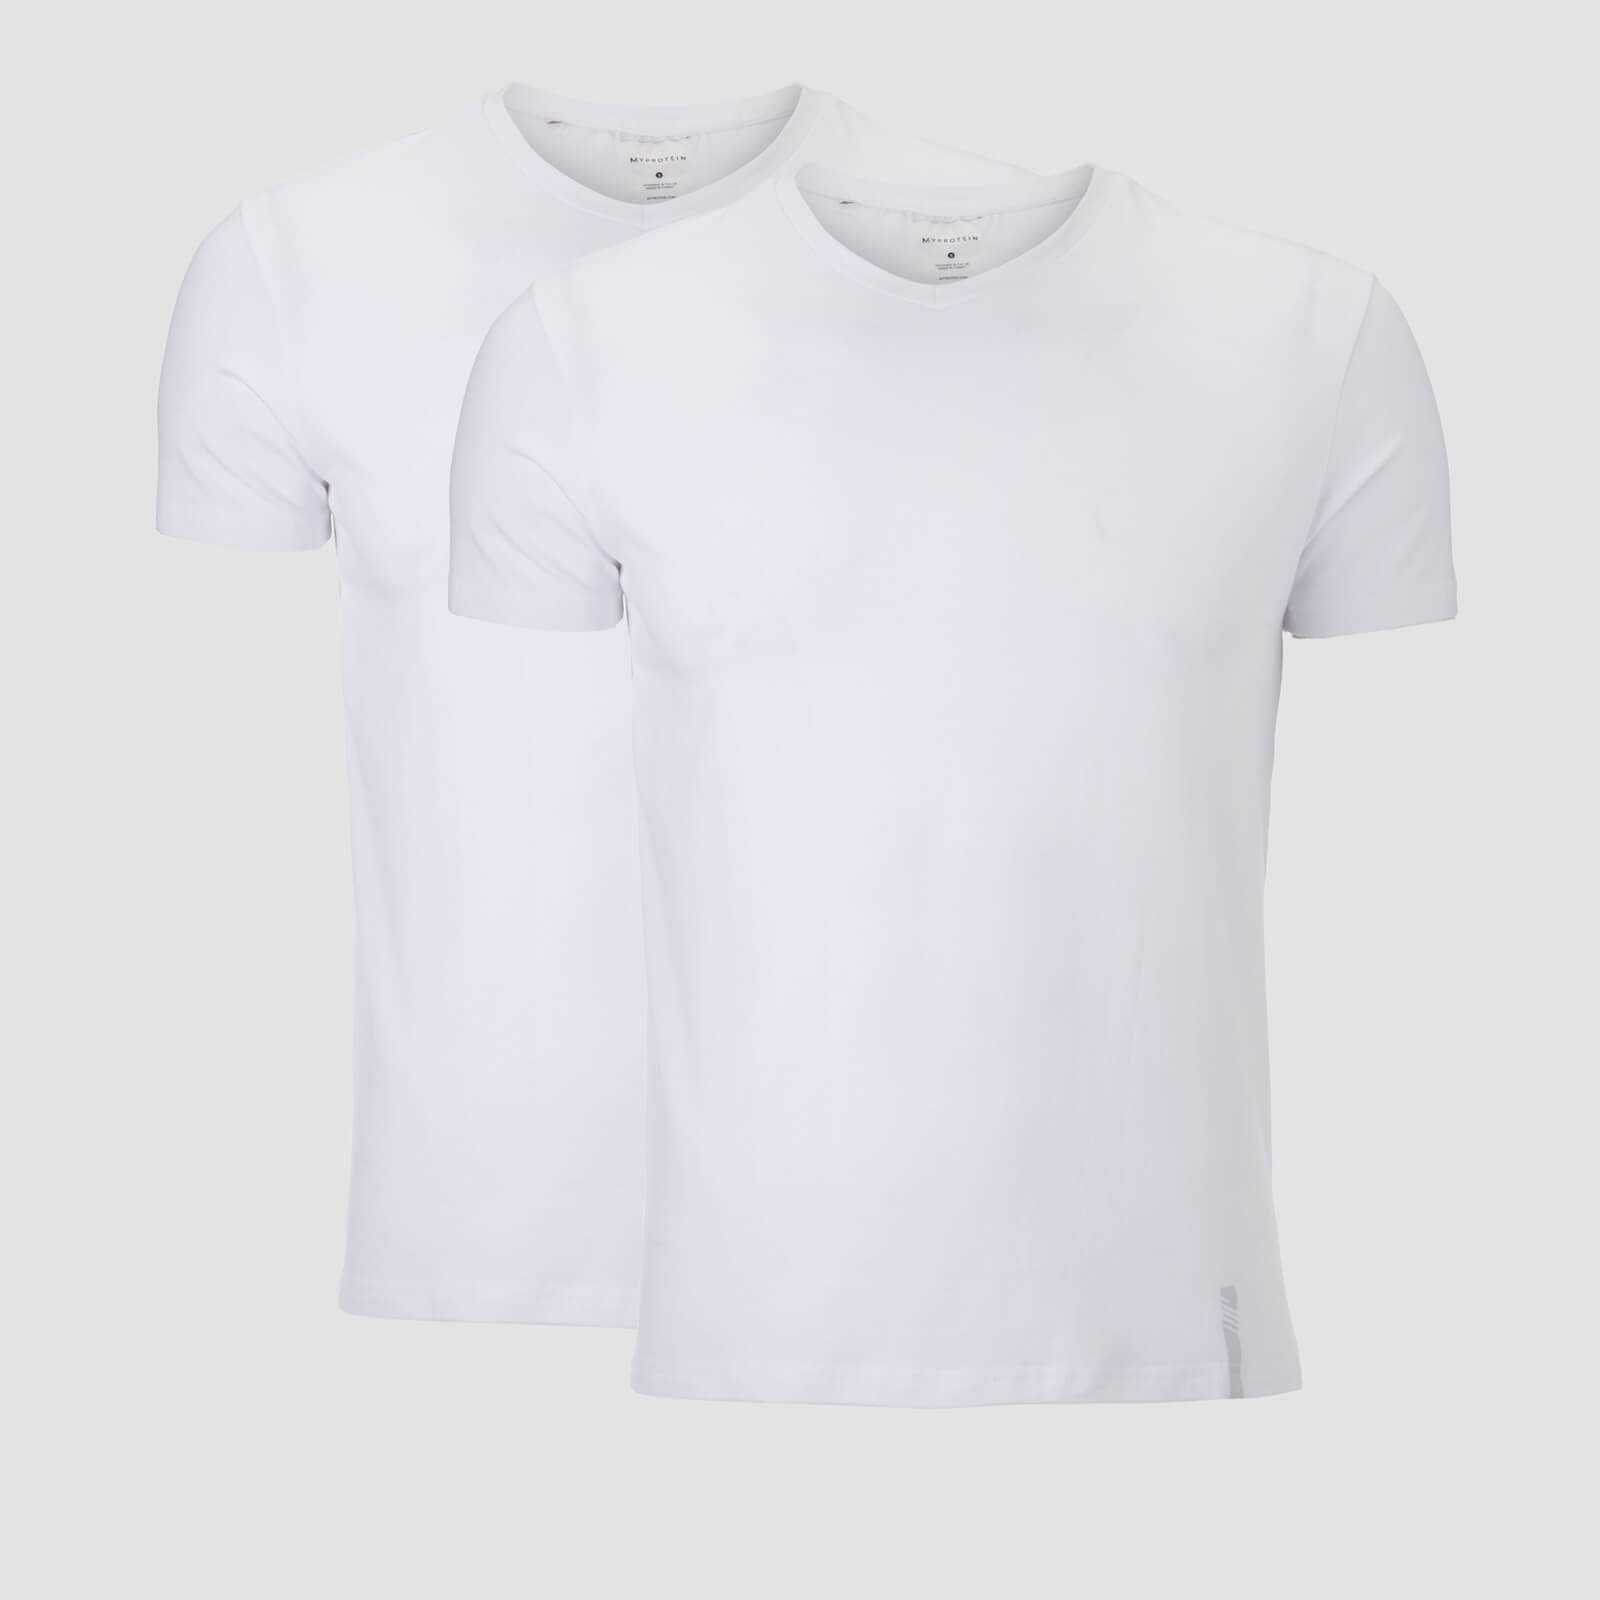 MP muška luksuzna klasična majica s V-izrezom – bijela/bijela (2 u paketu)